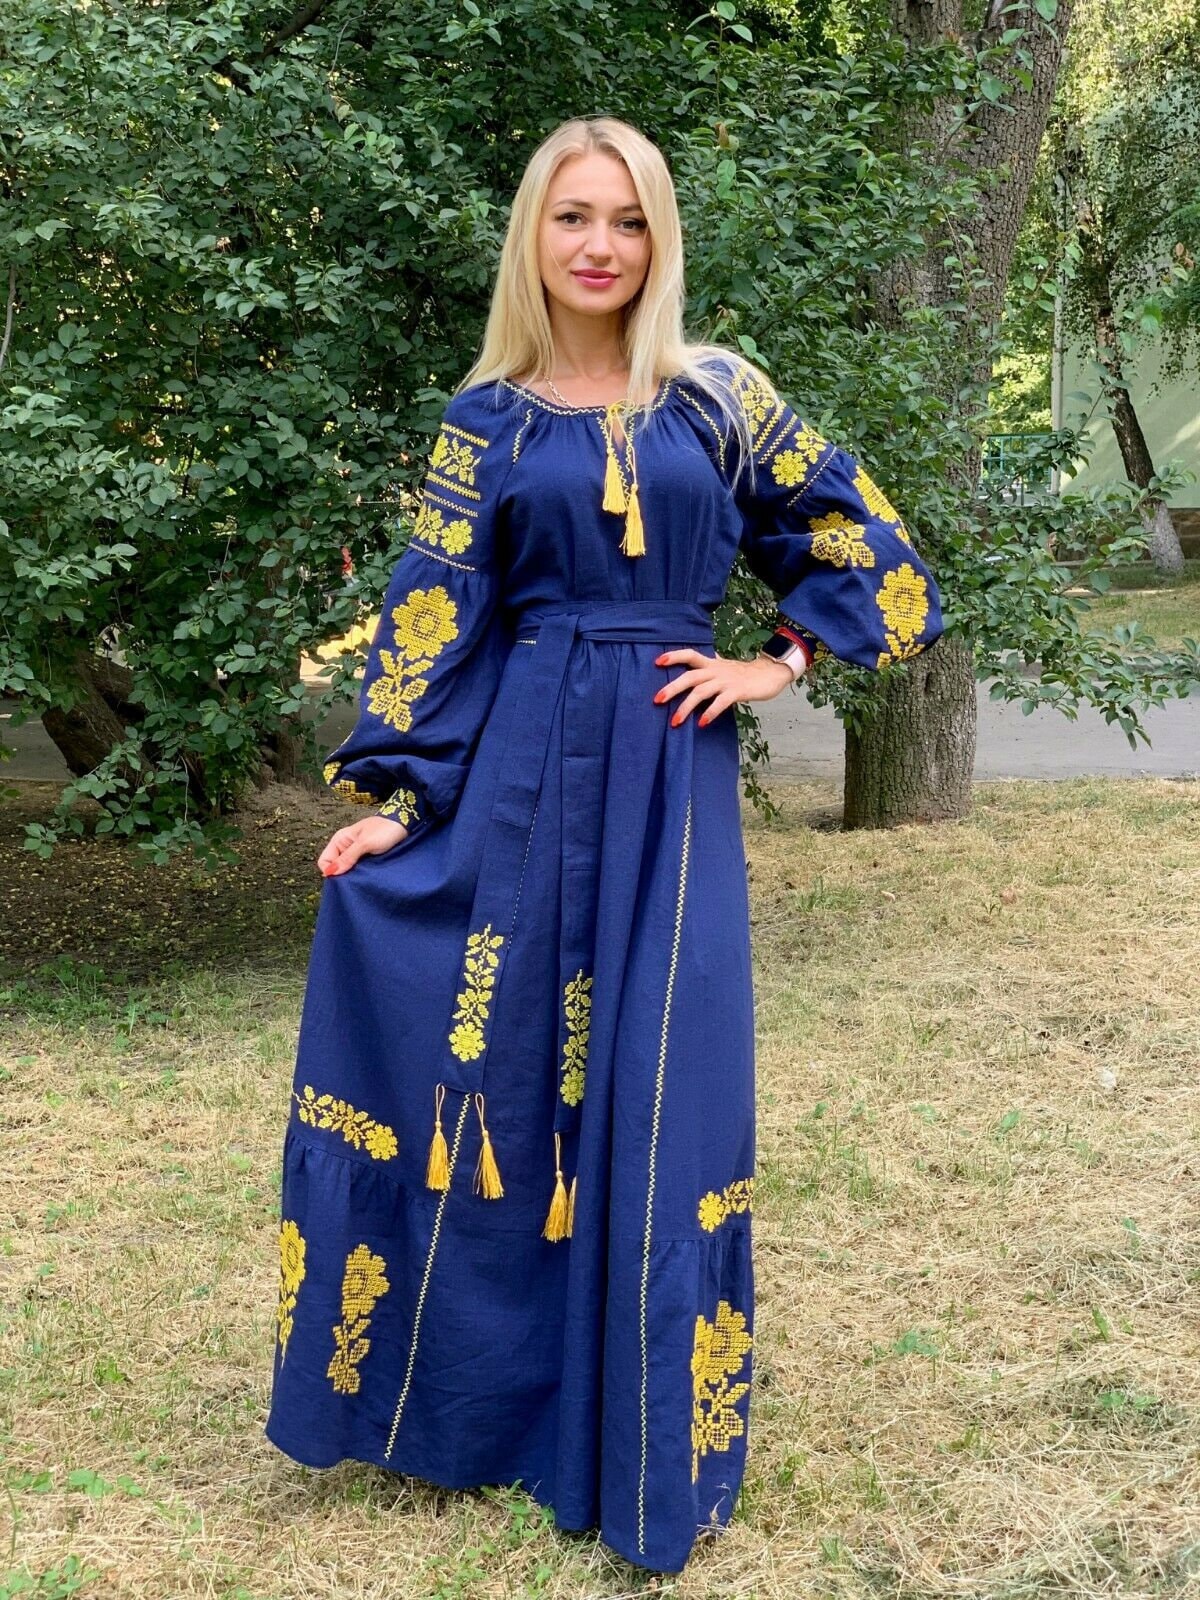 Embroidered Maxi Dress Ethnic Boho Chic Linen Ukrainian Ethno | Etsy